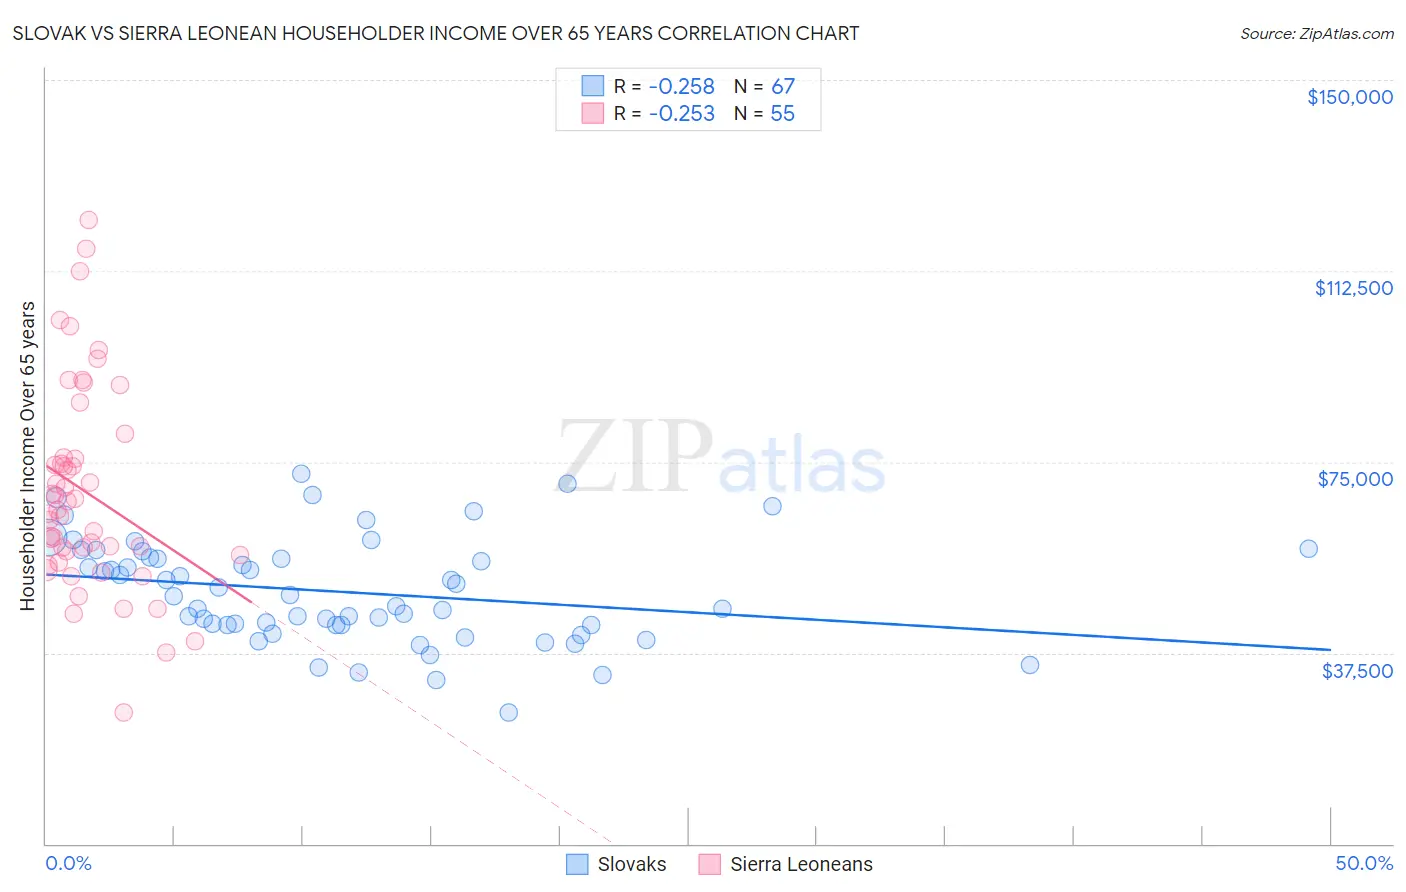 Slovak vs Sierra Leonean Householder Income Over 65 years